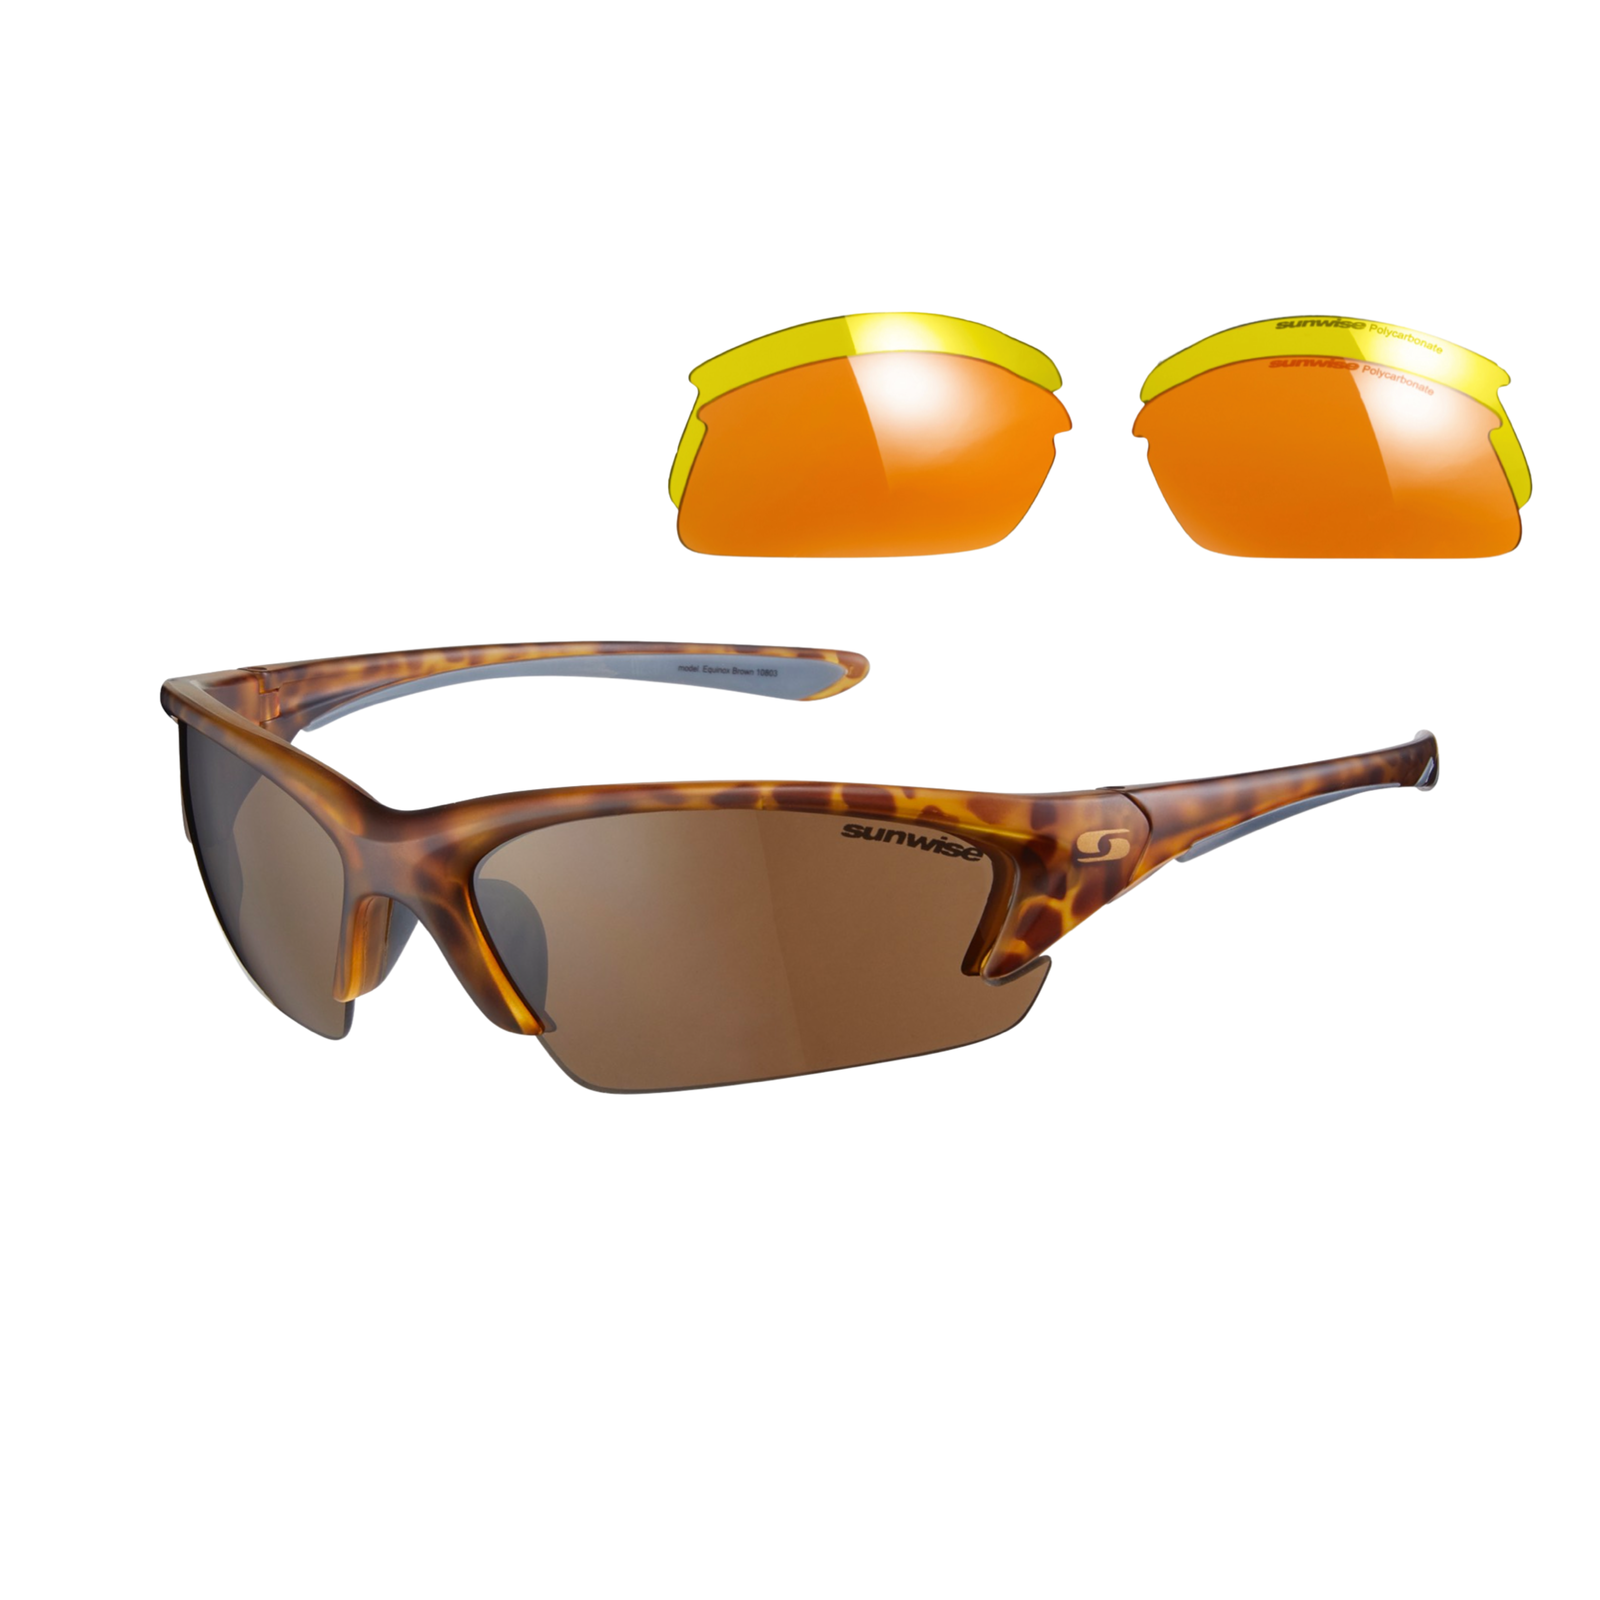 Gafas de sol deportivas Equinox con lentes intercambiables - 8 colores